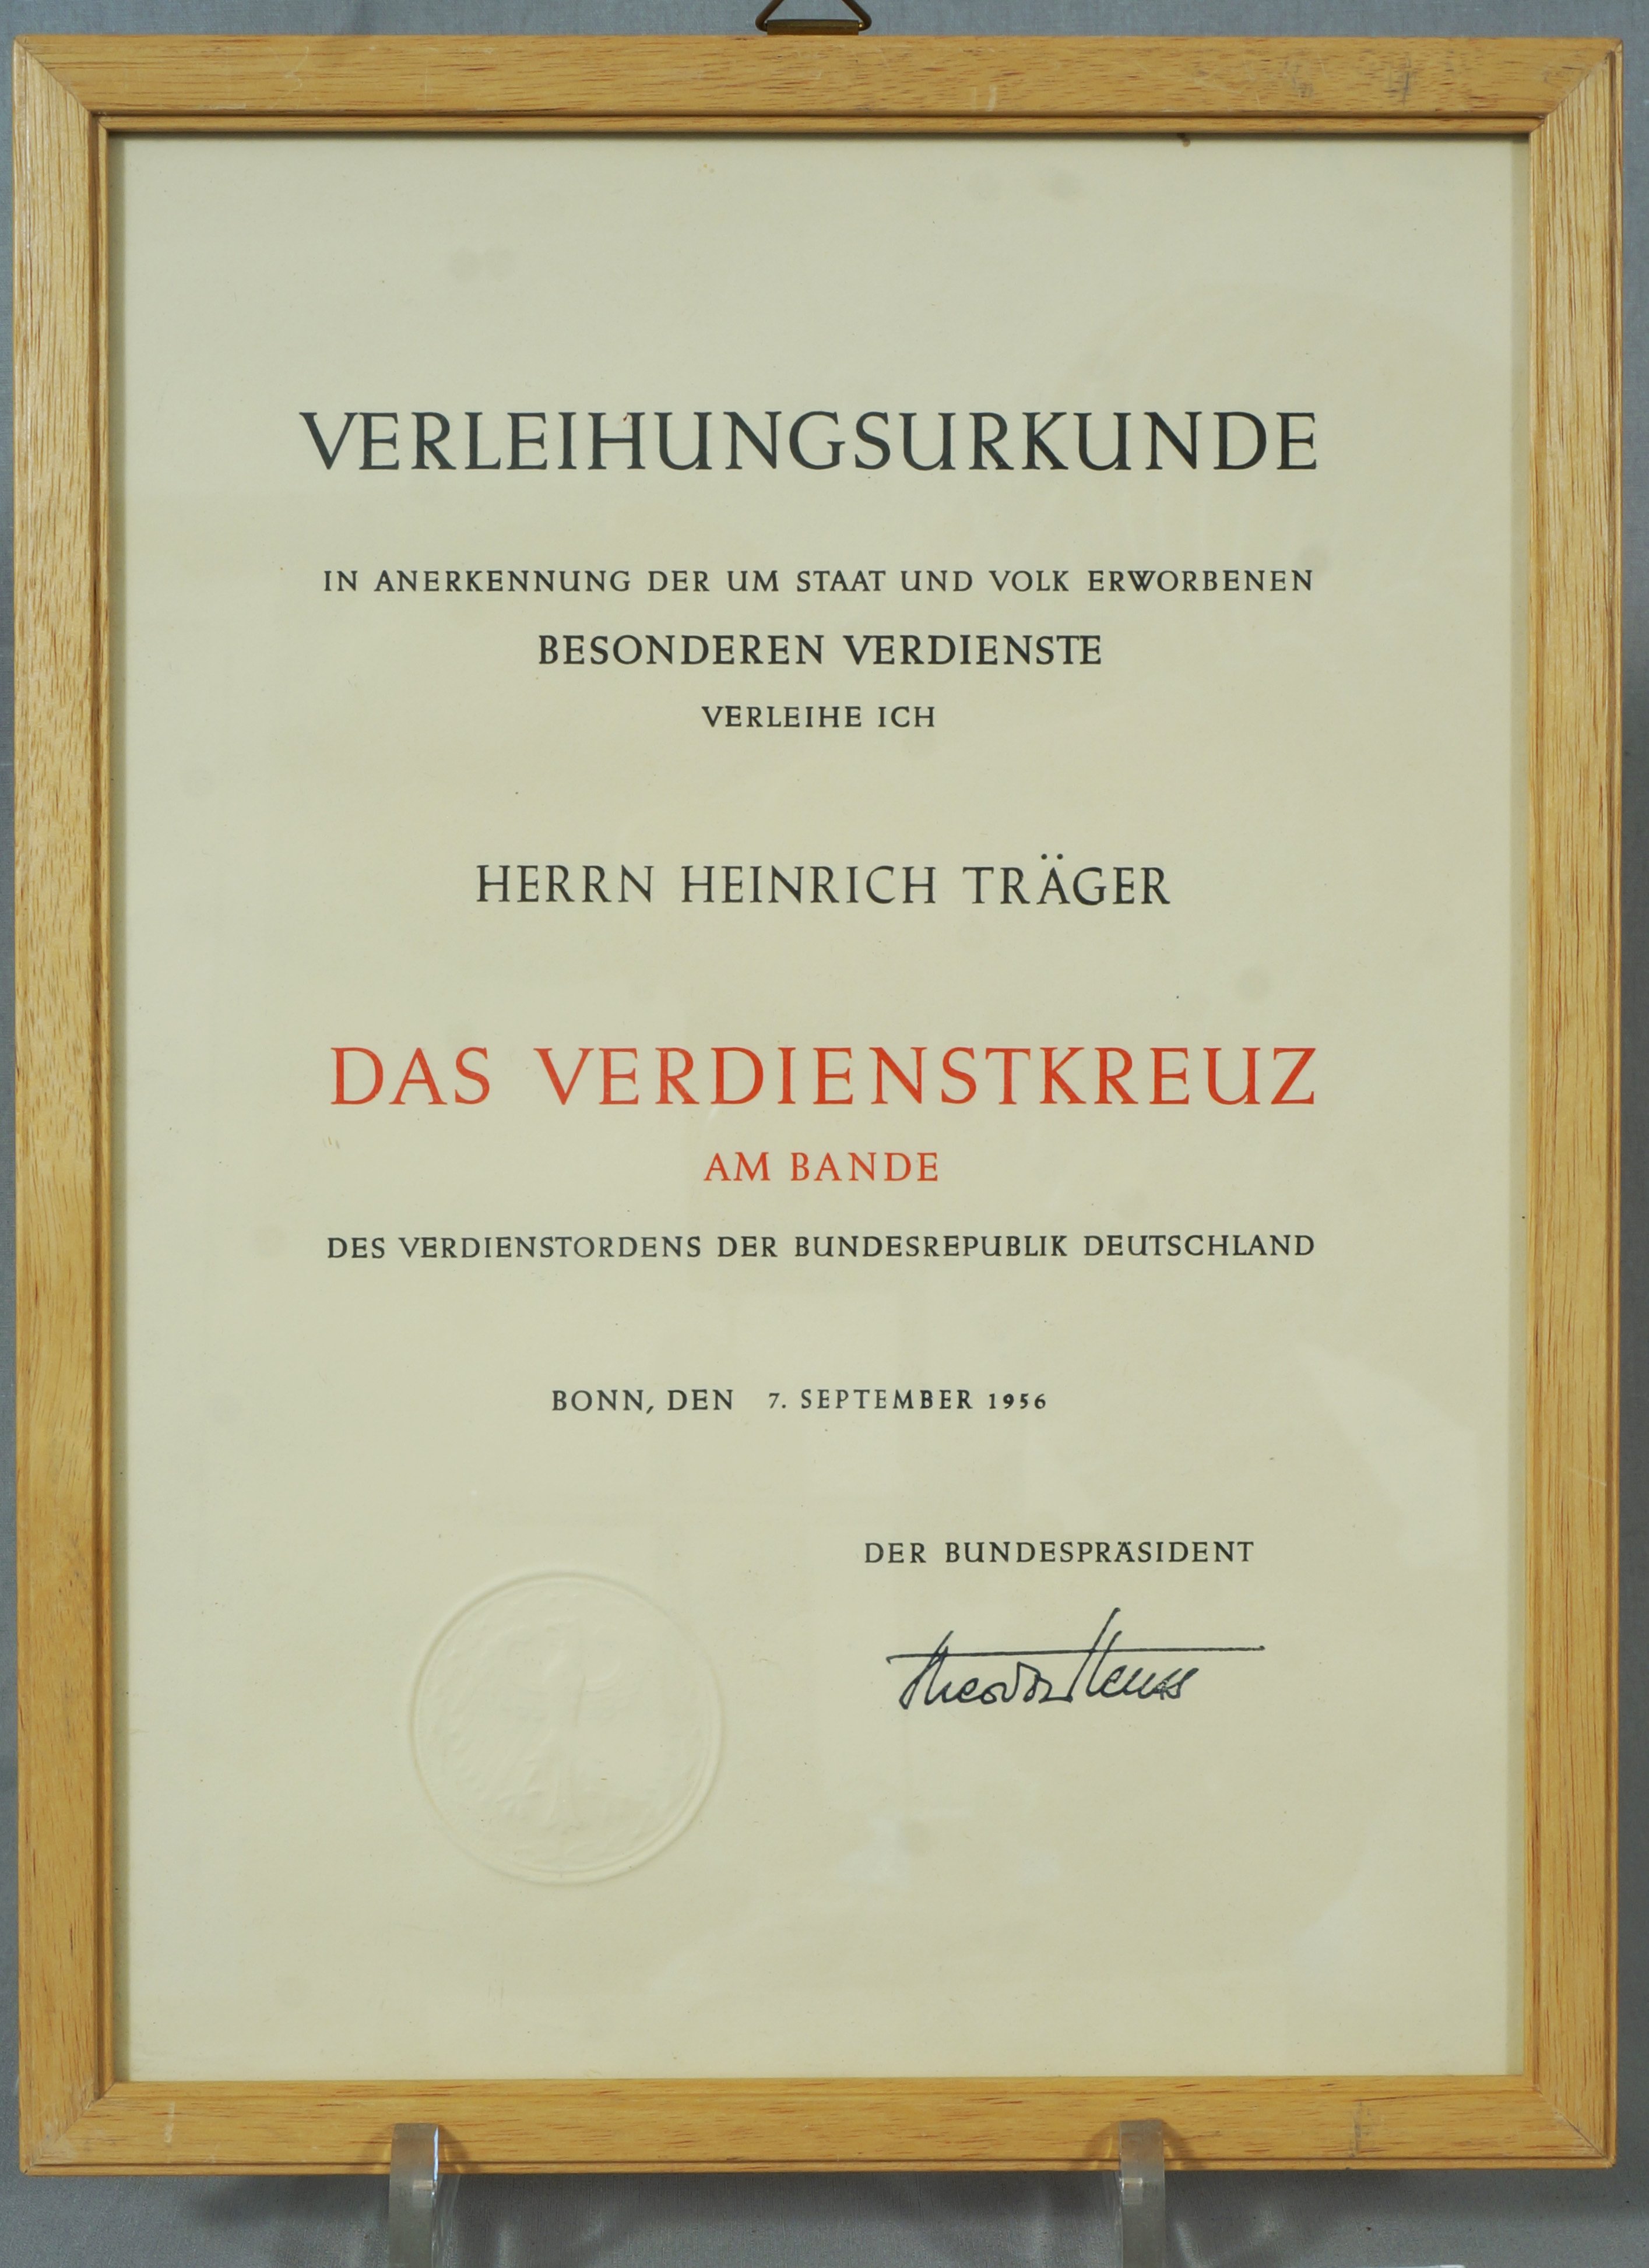 Urkunde zum Bundesverdienstkreuz am Bande (Werra-Kalibergbau-Museum, Heringen/W. CC BY-NC-SA)